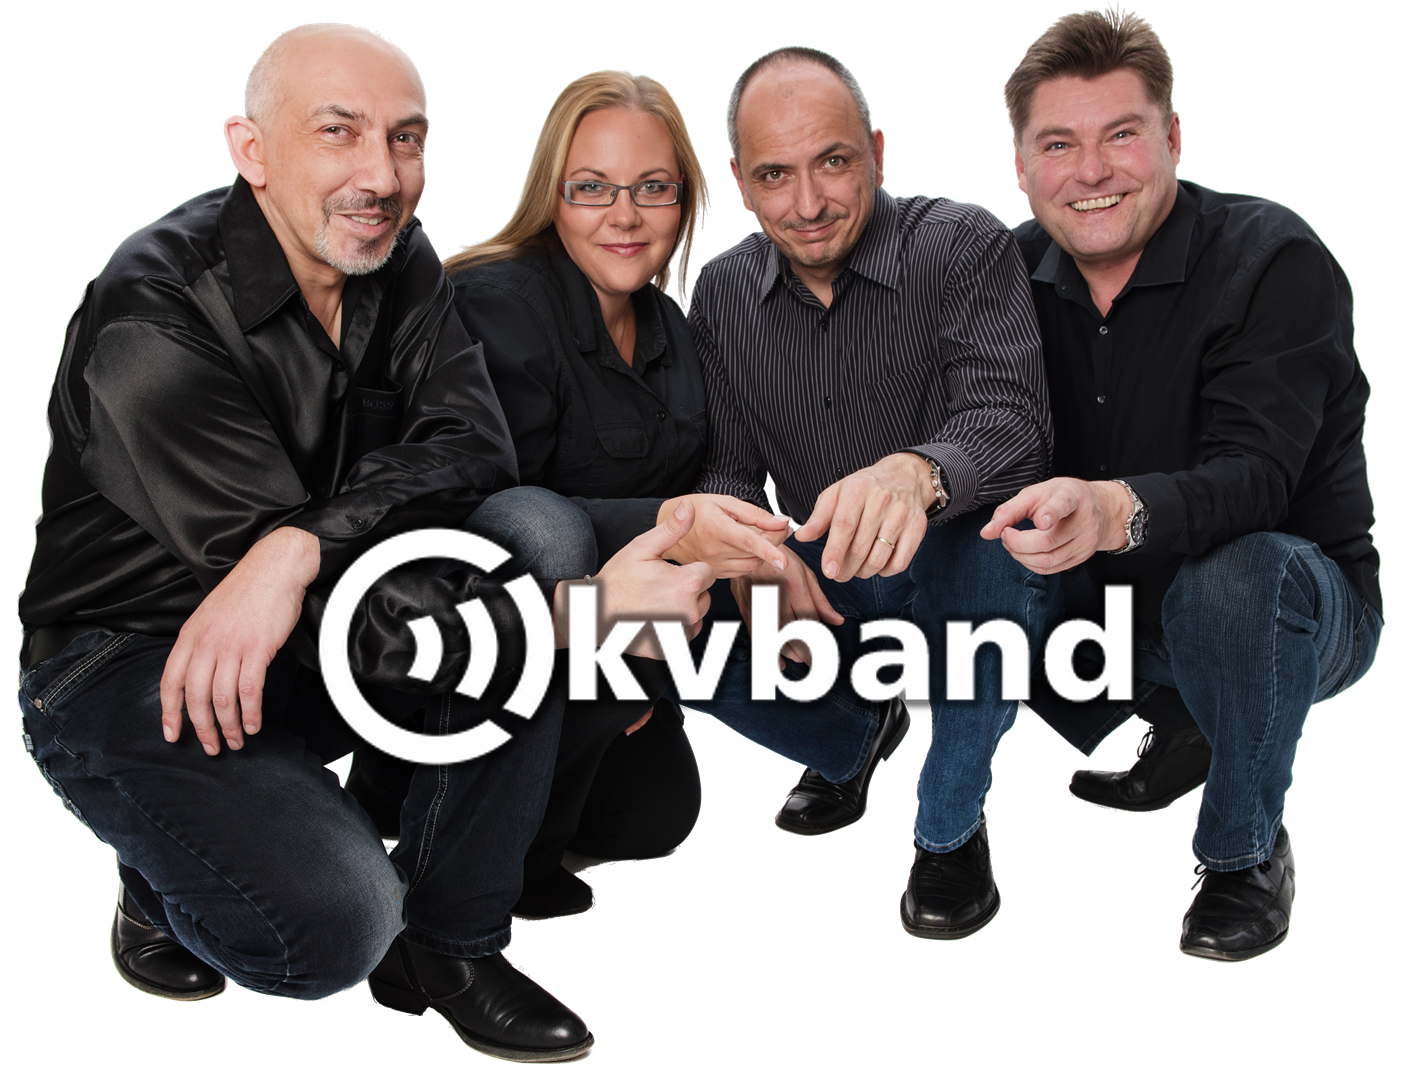 logo_and_kvband_band25png.png